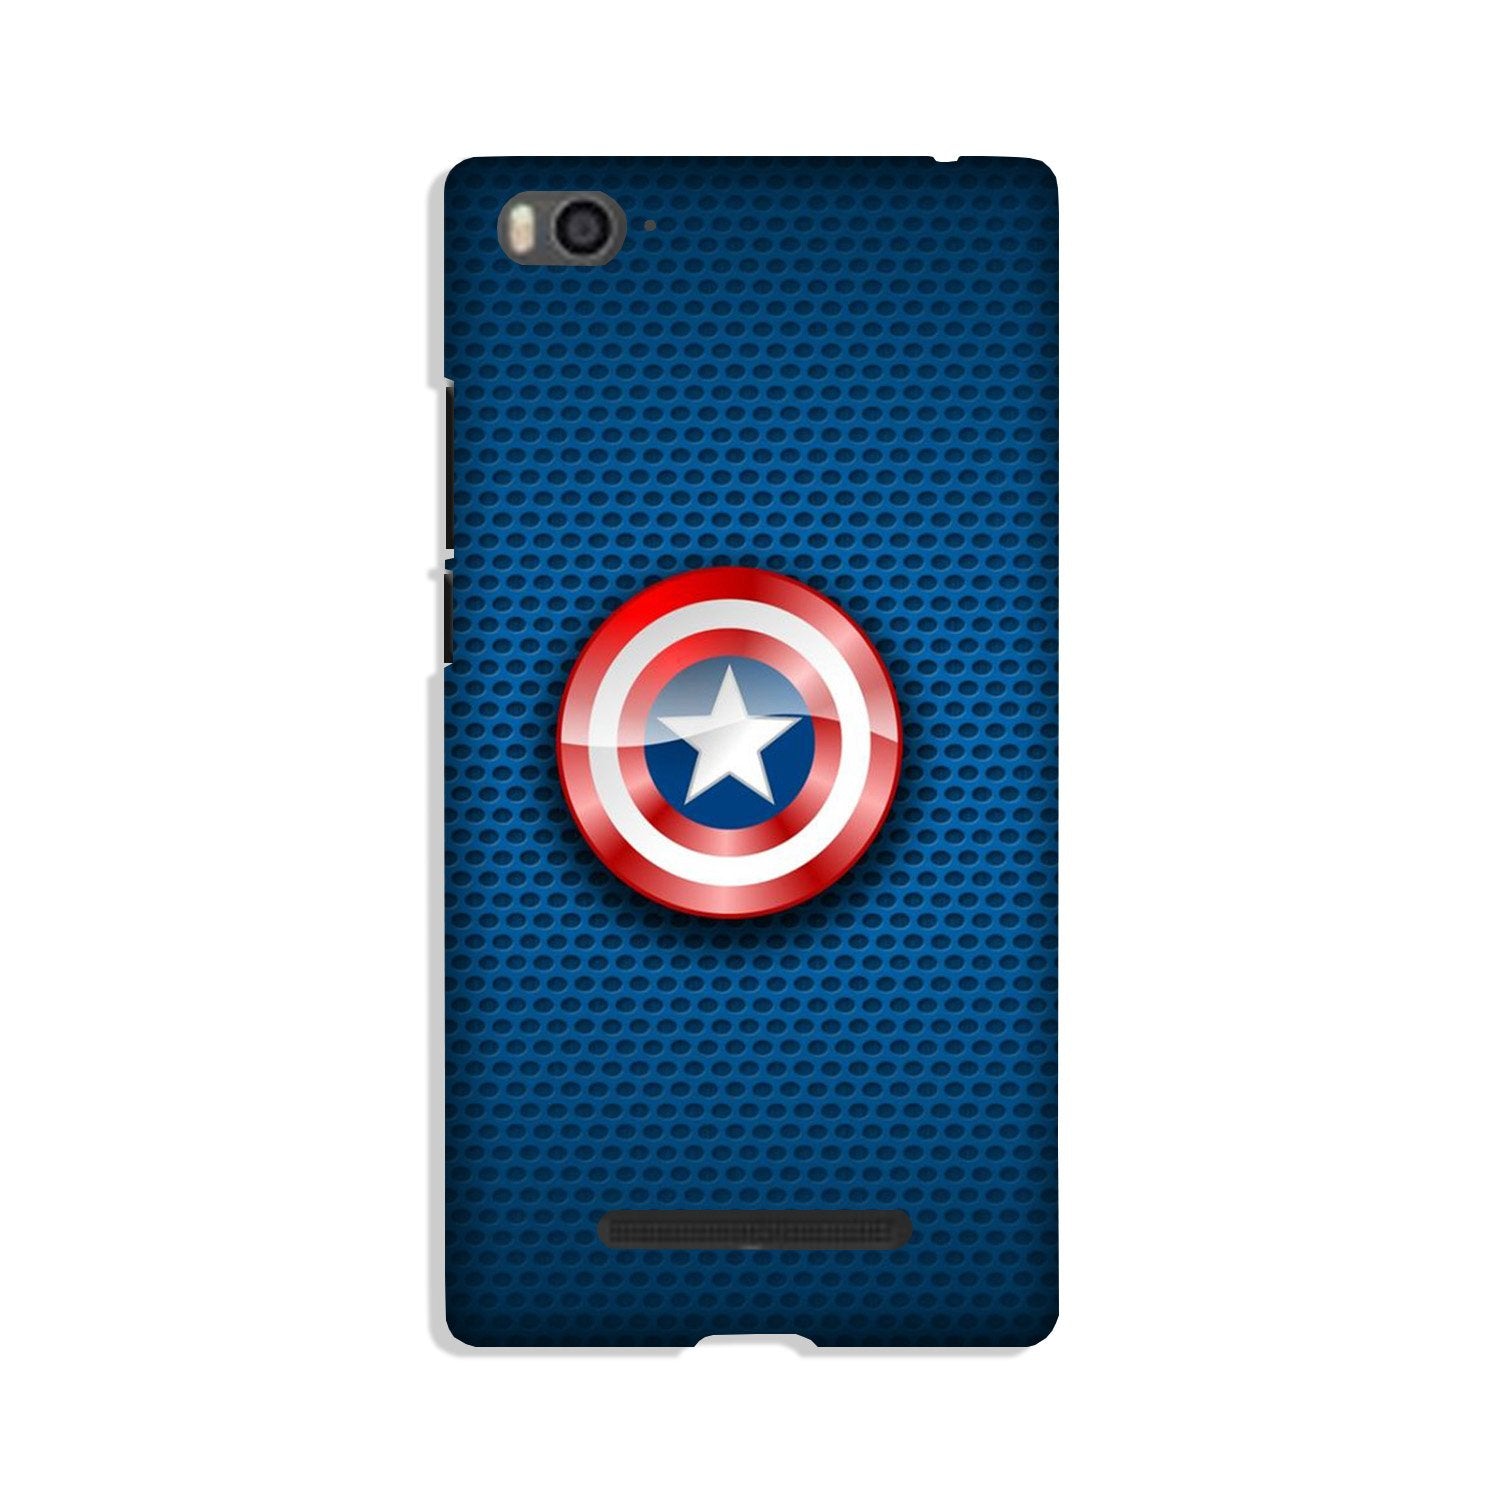 Captain America Shield Case for Xiaomi Mi 4i (Design No. 253)